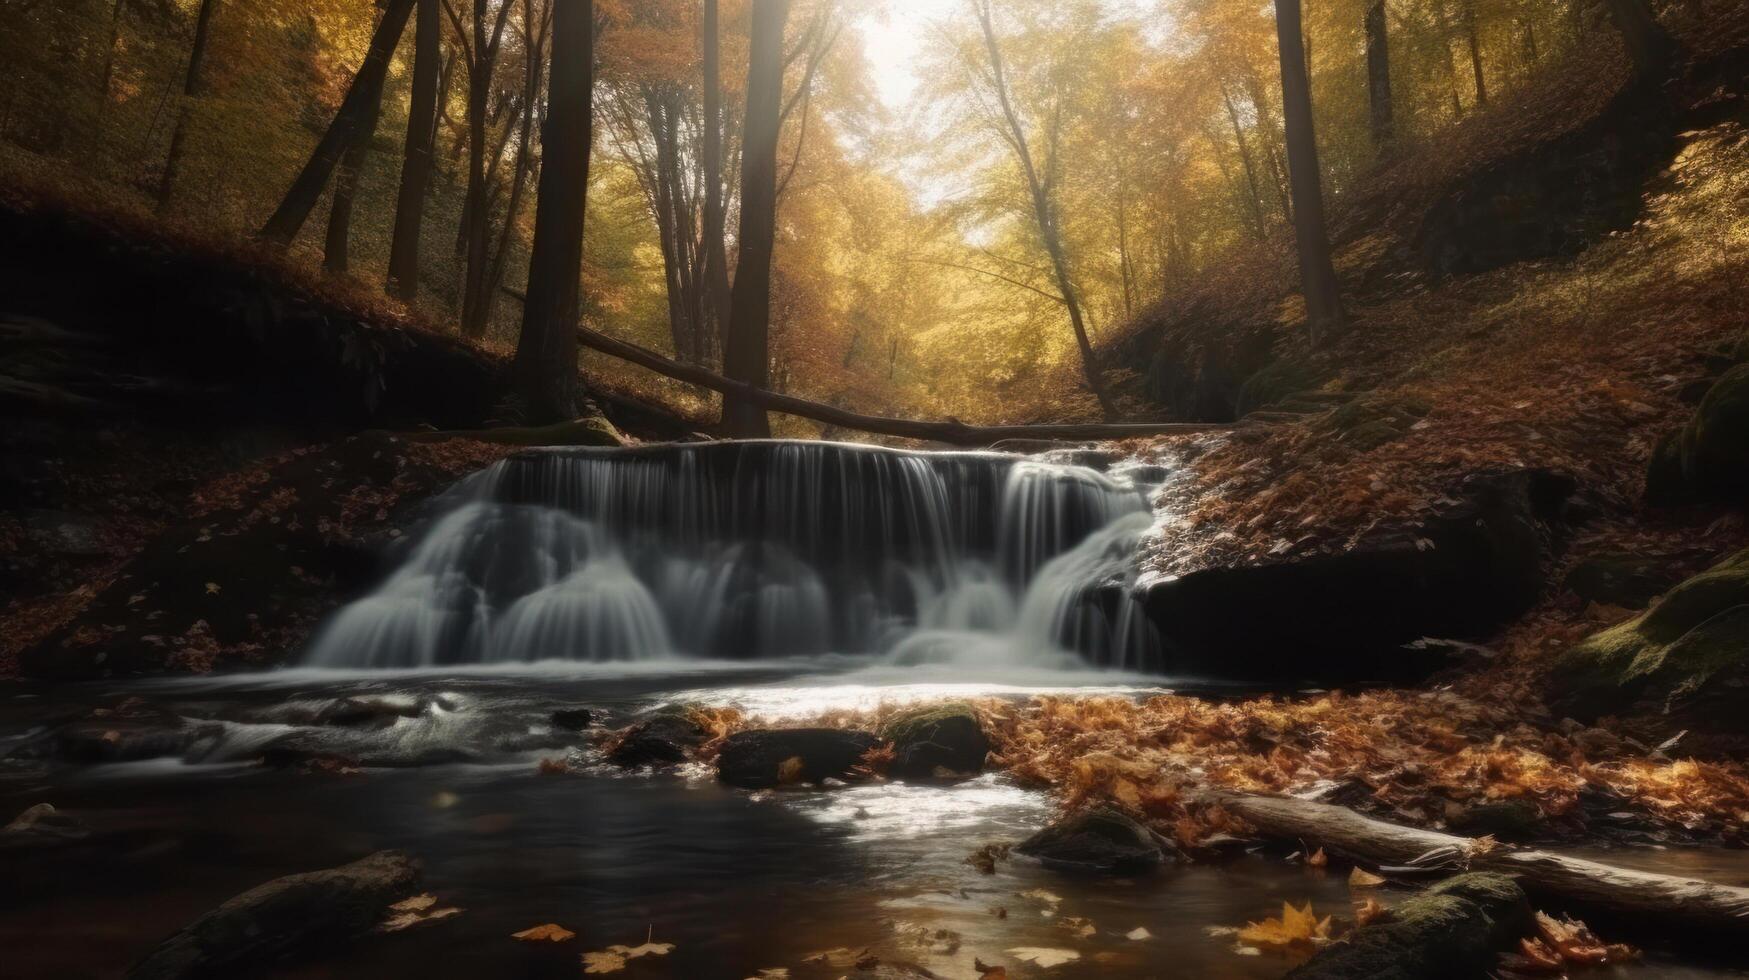 Waterfall in autumn. Illustration photo